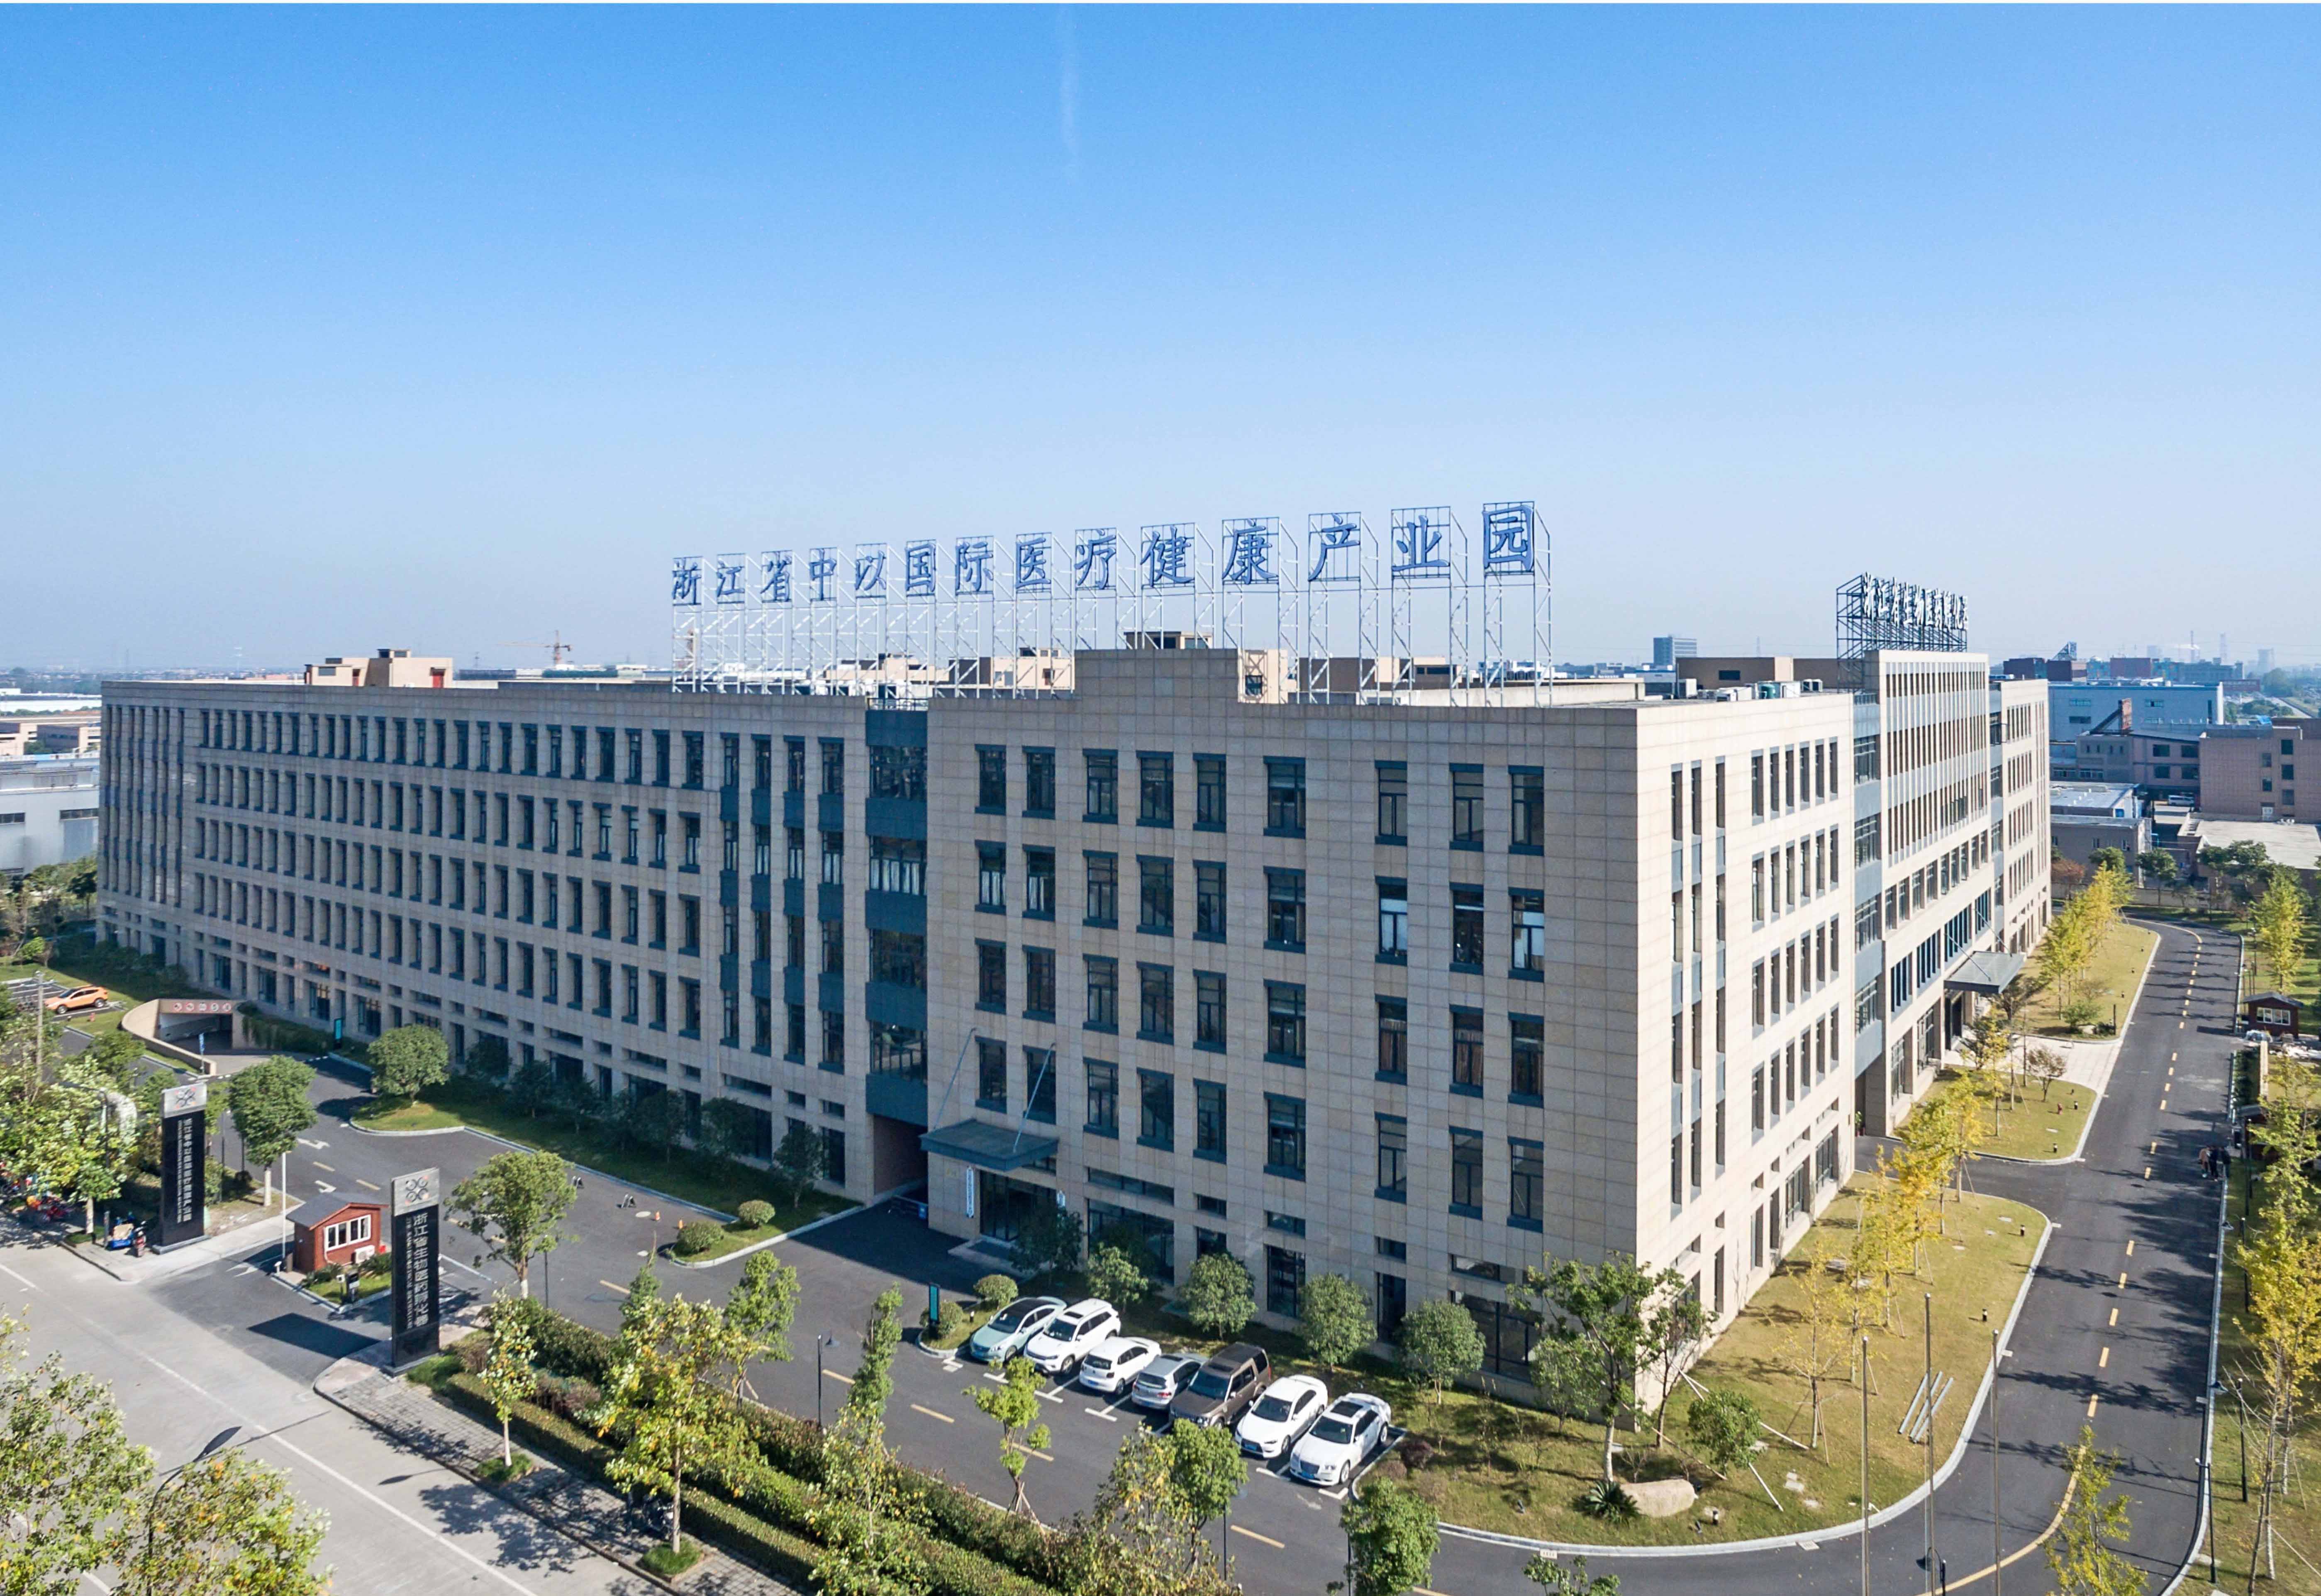 2017年12月13日,杭州德译医疗科技有限公司正式入驻浙江生物医药孵化